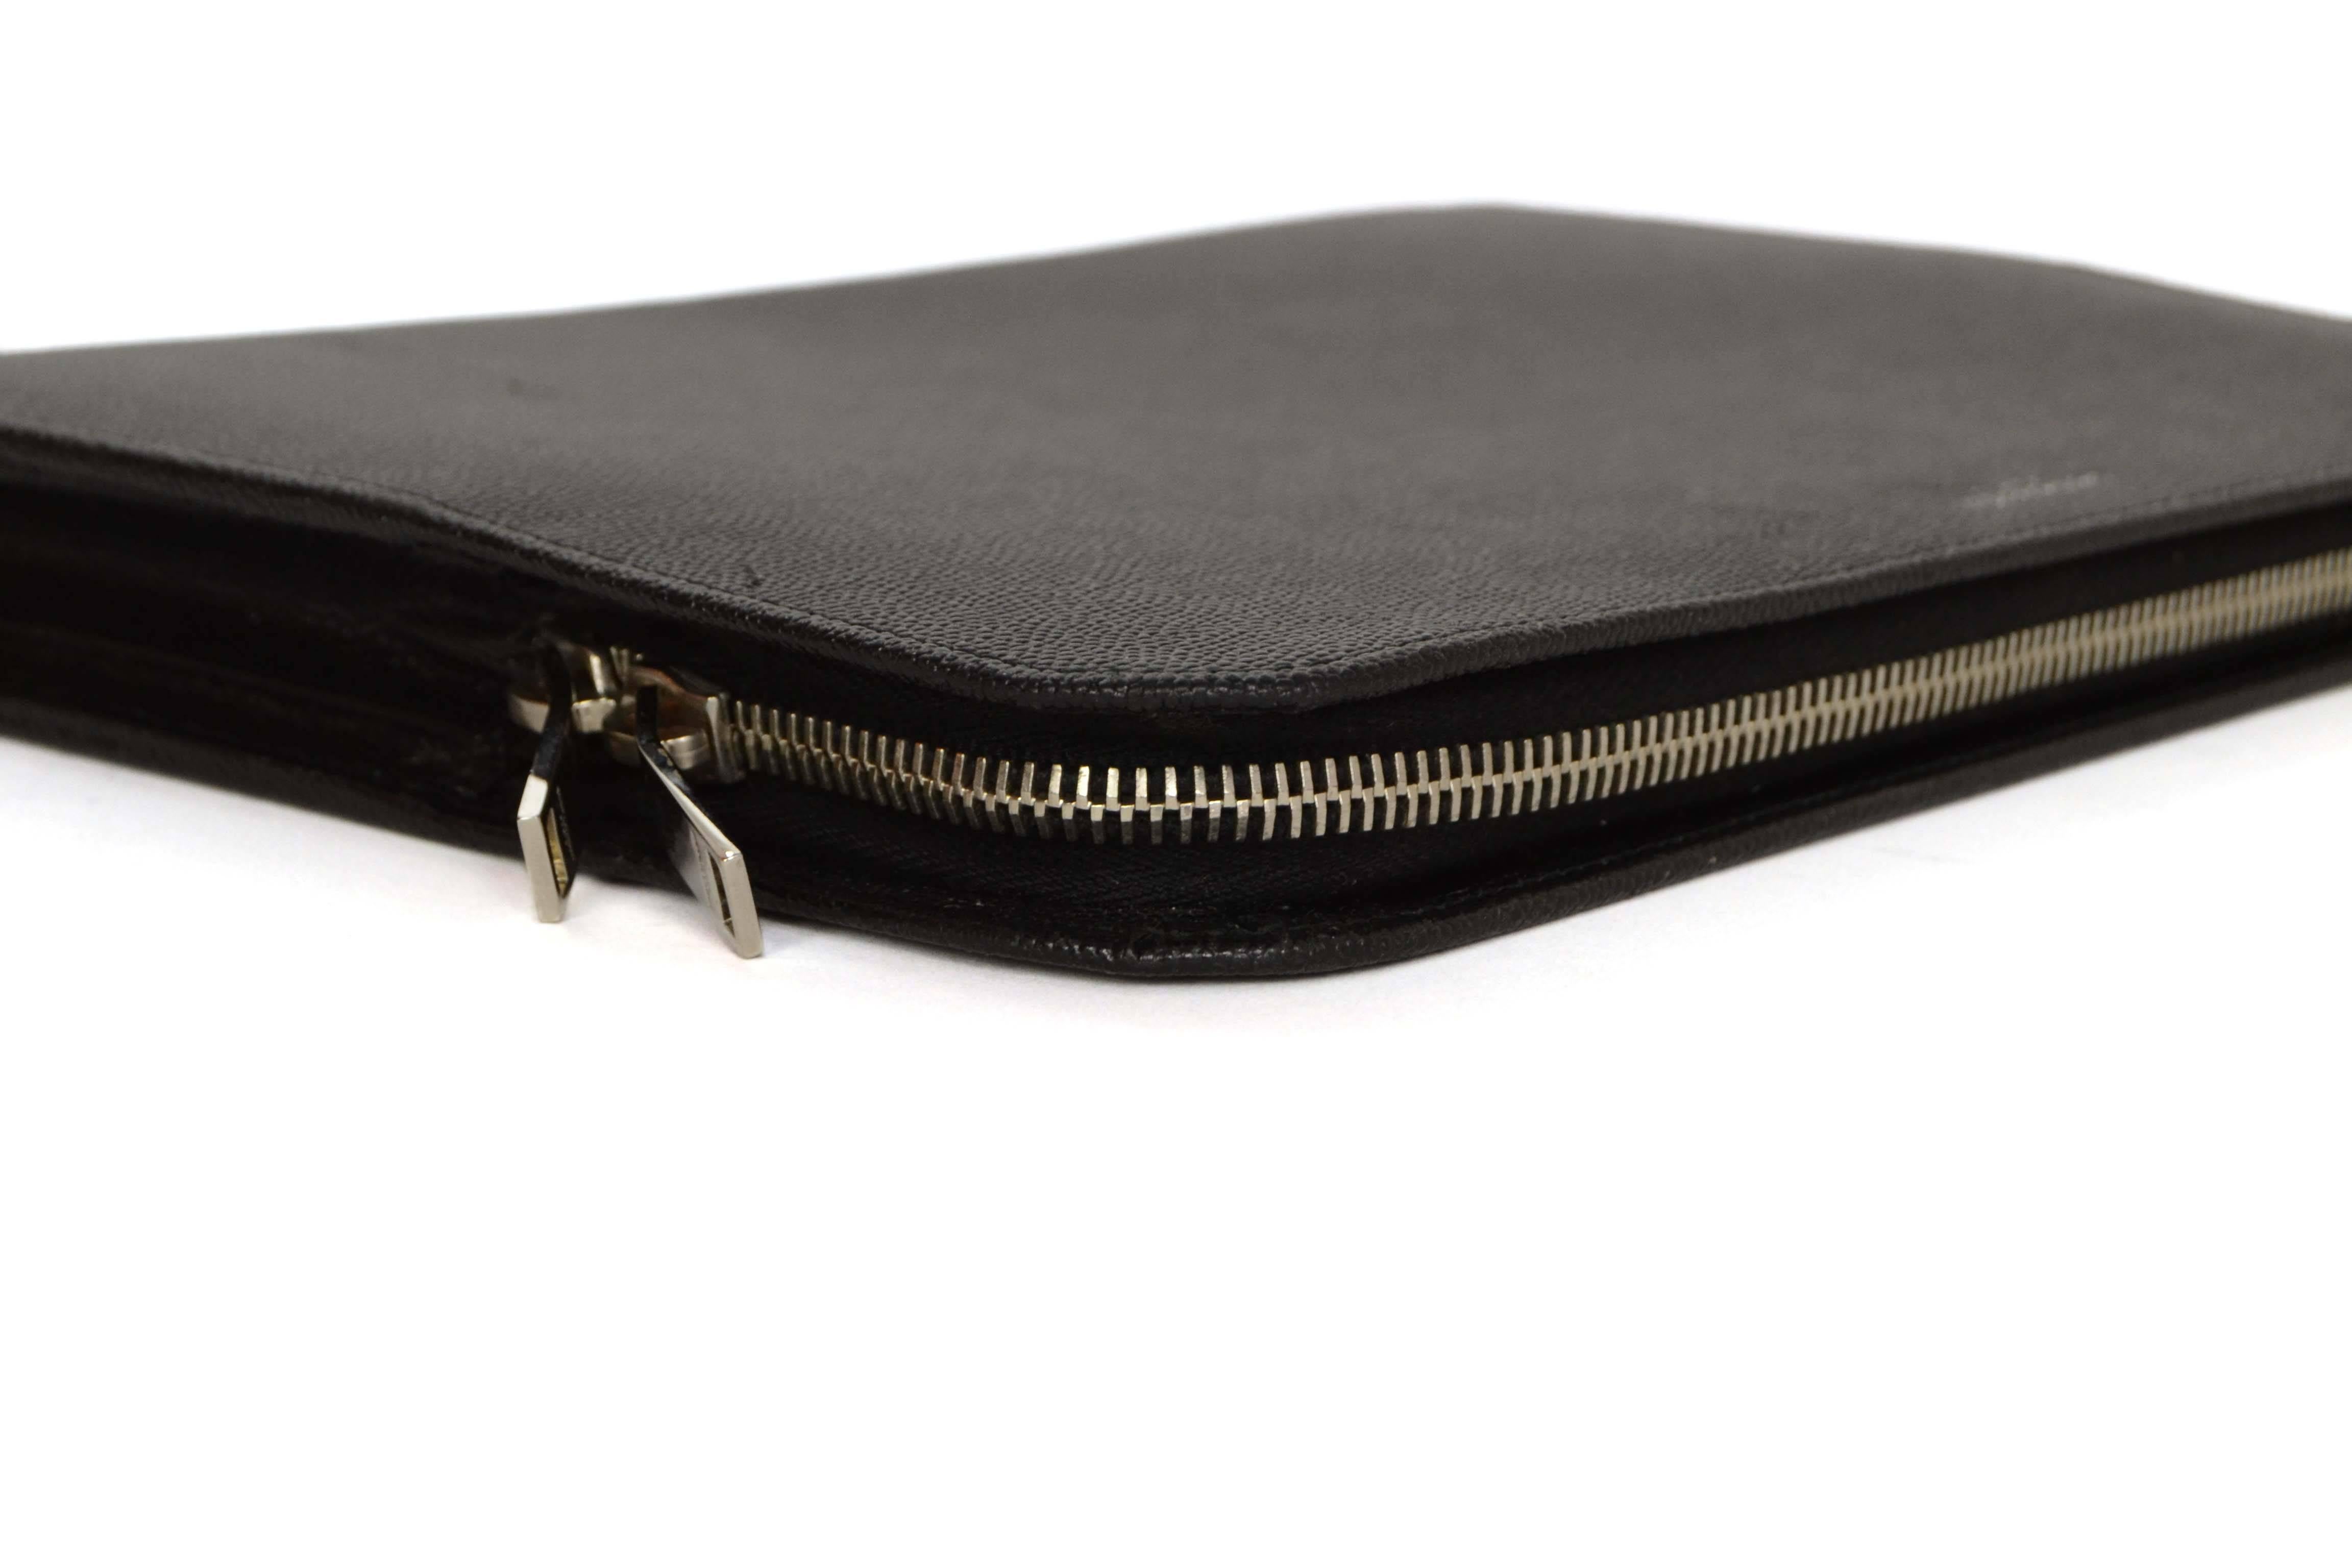 Women's Saint Laurent Black Leather iPad Case/Clutch Bag rt $560